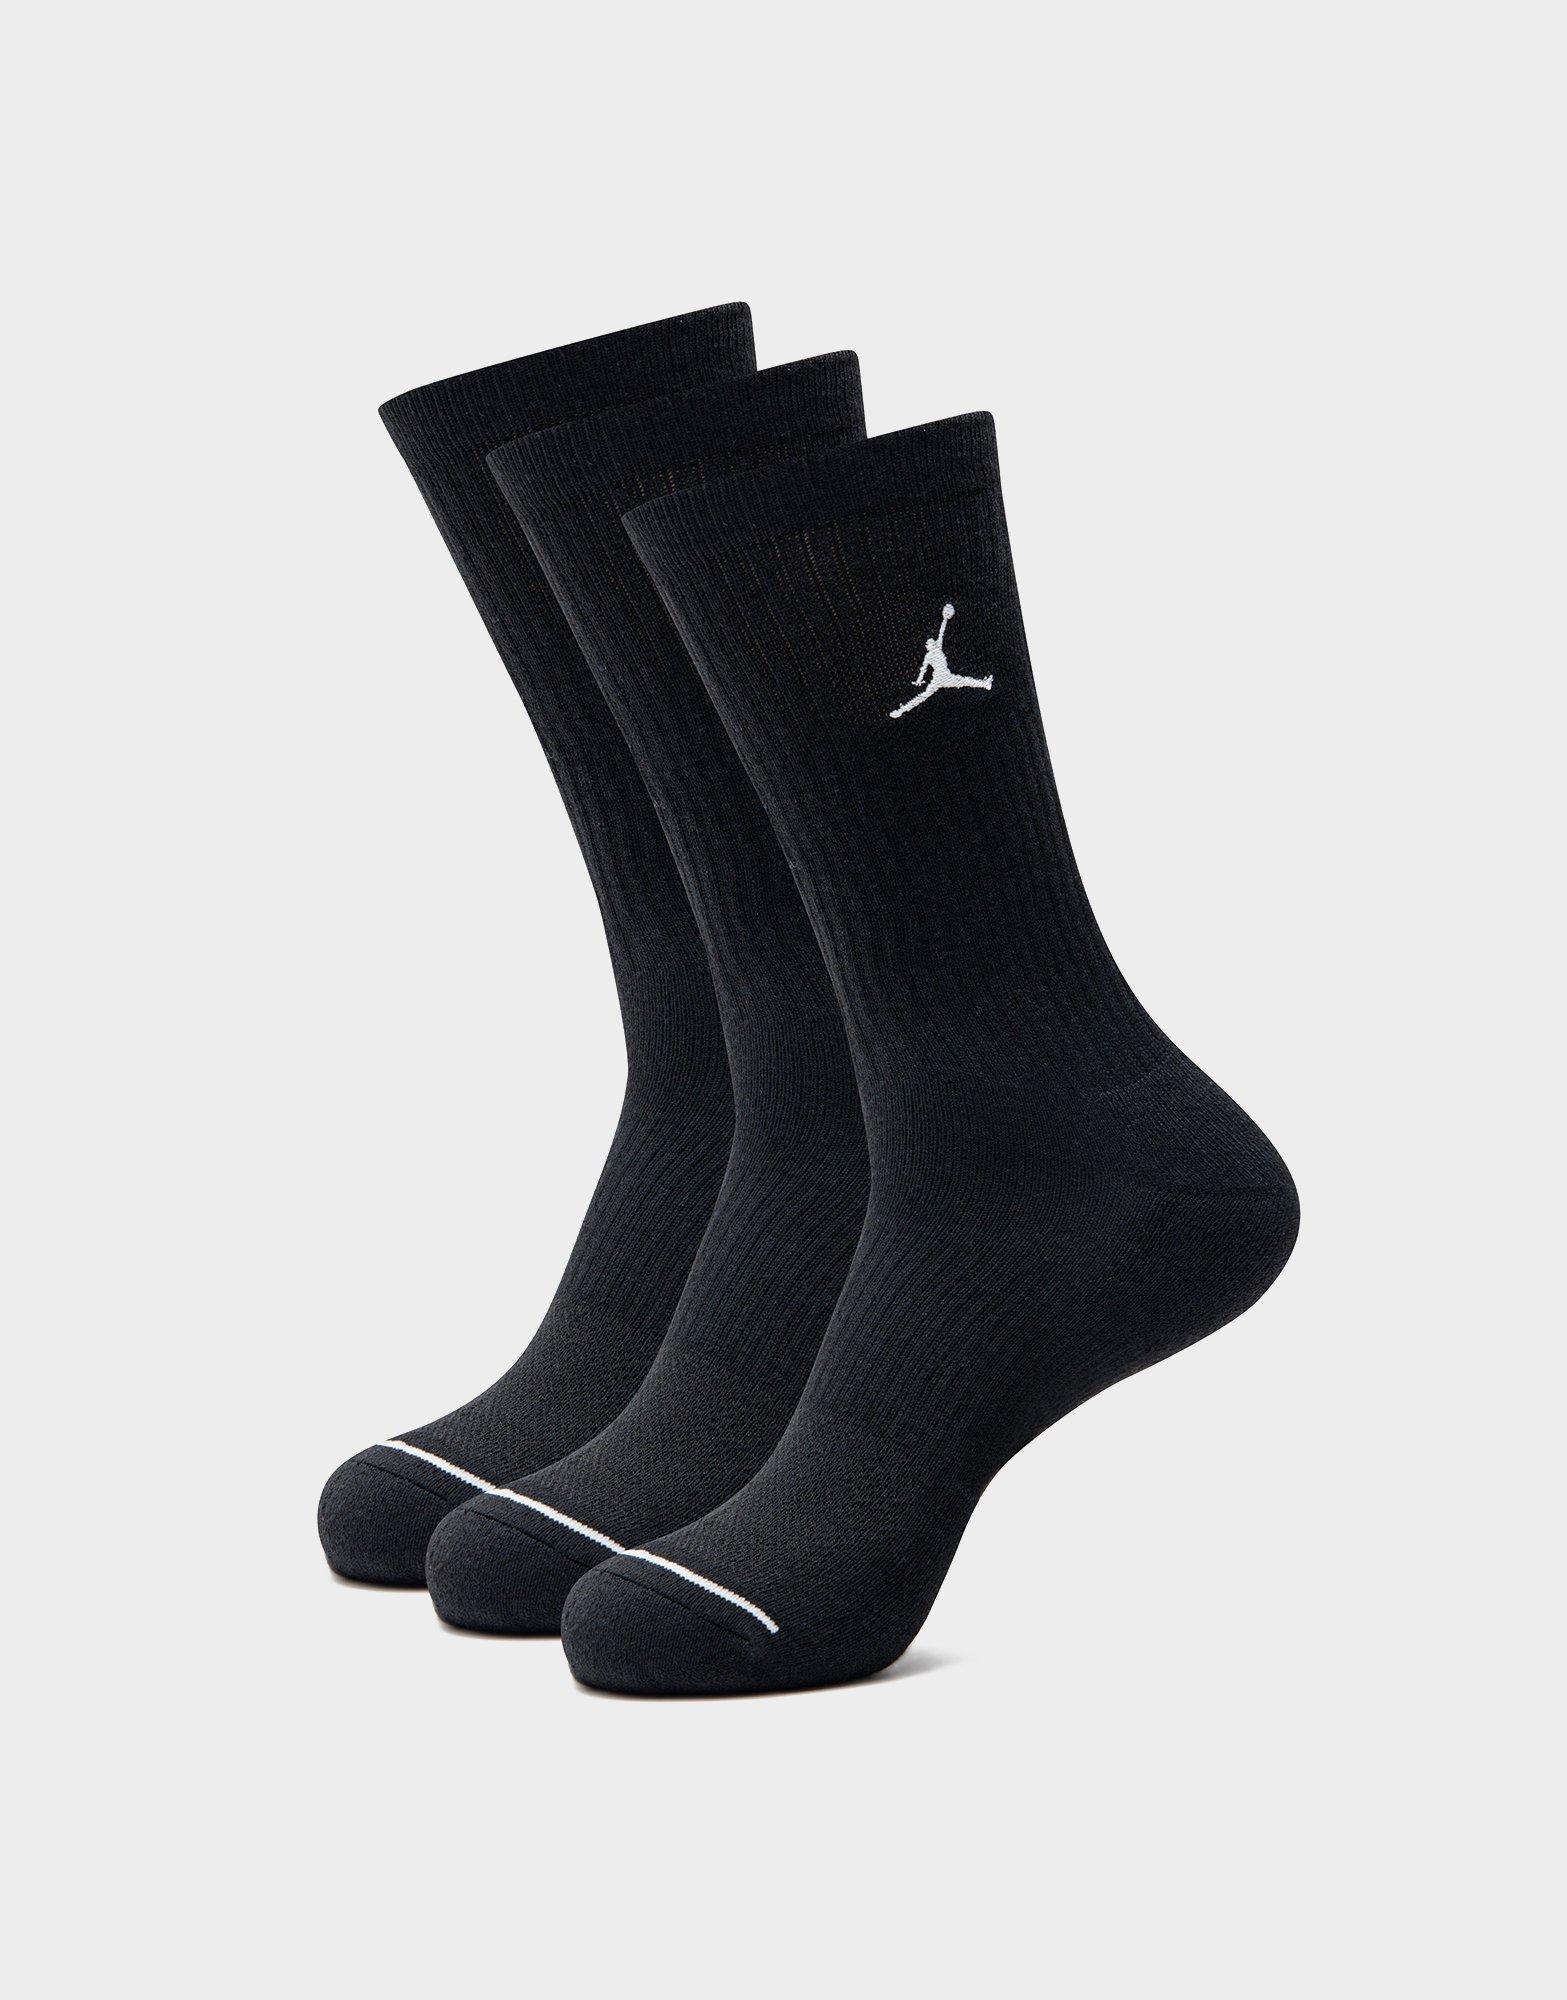 Black Jordan Air Socks 3 Pack - JD Sports NZ